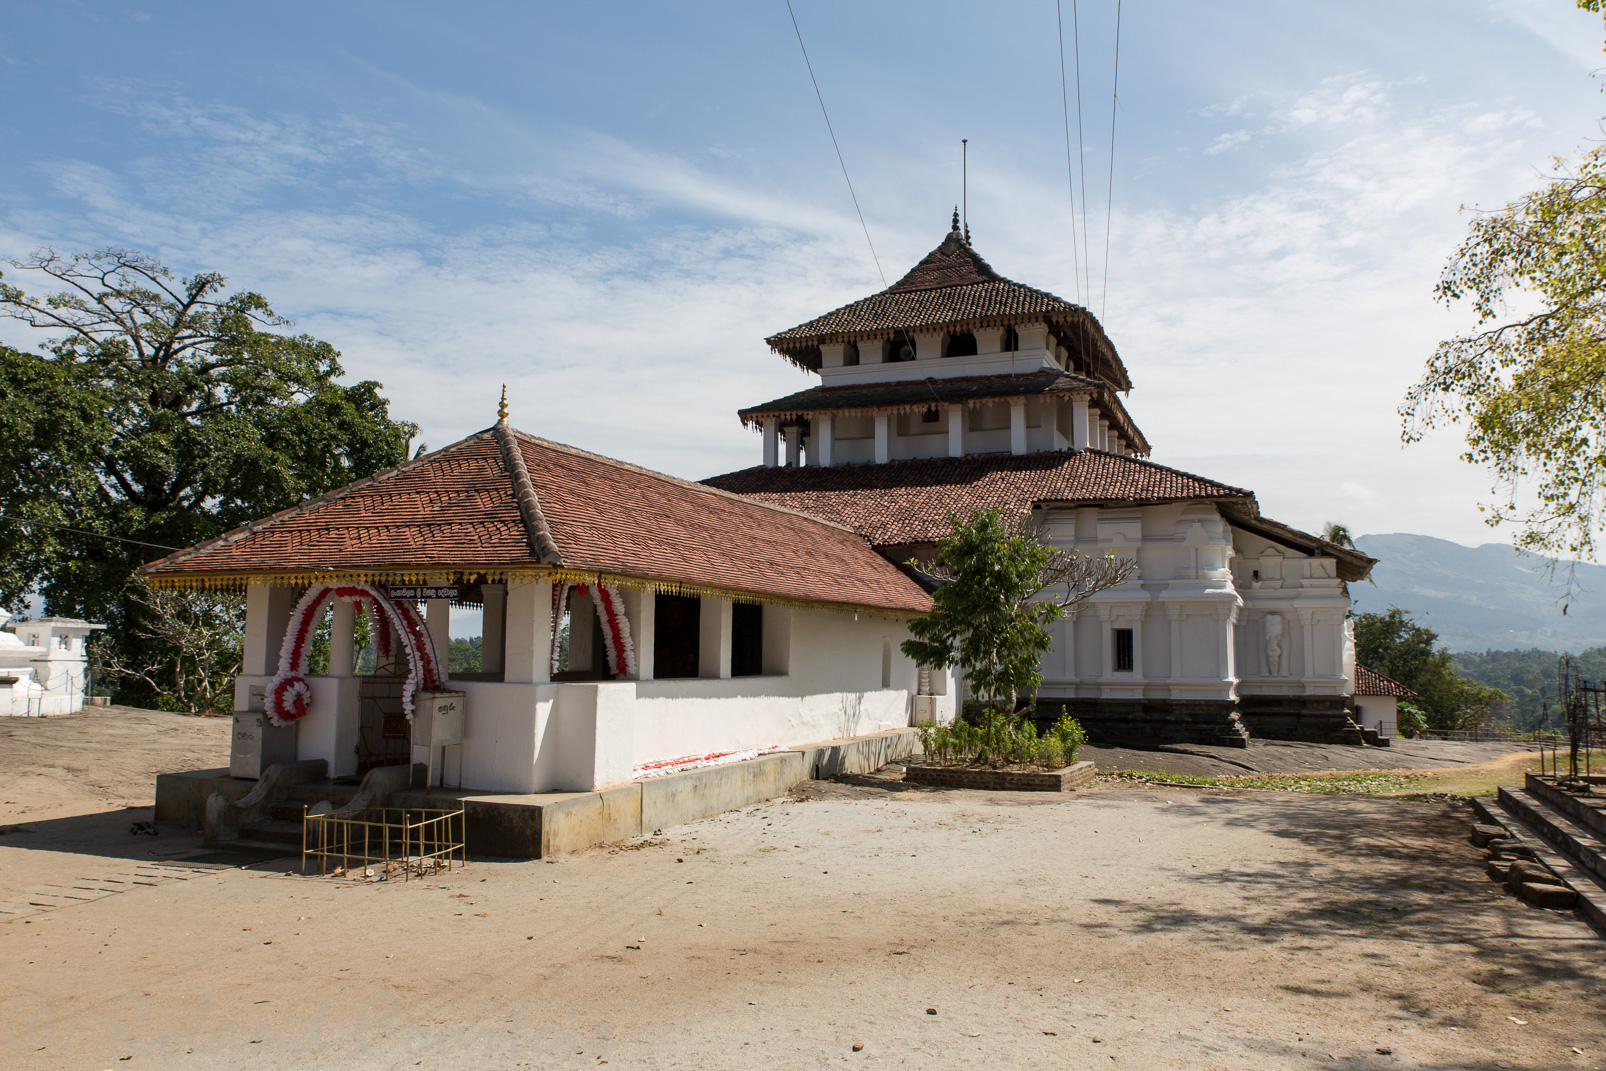 Le temple de Lankathilake date du XIVème siècle.